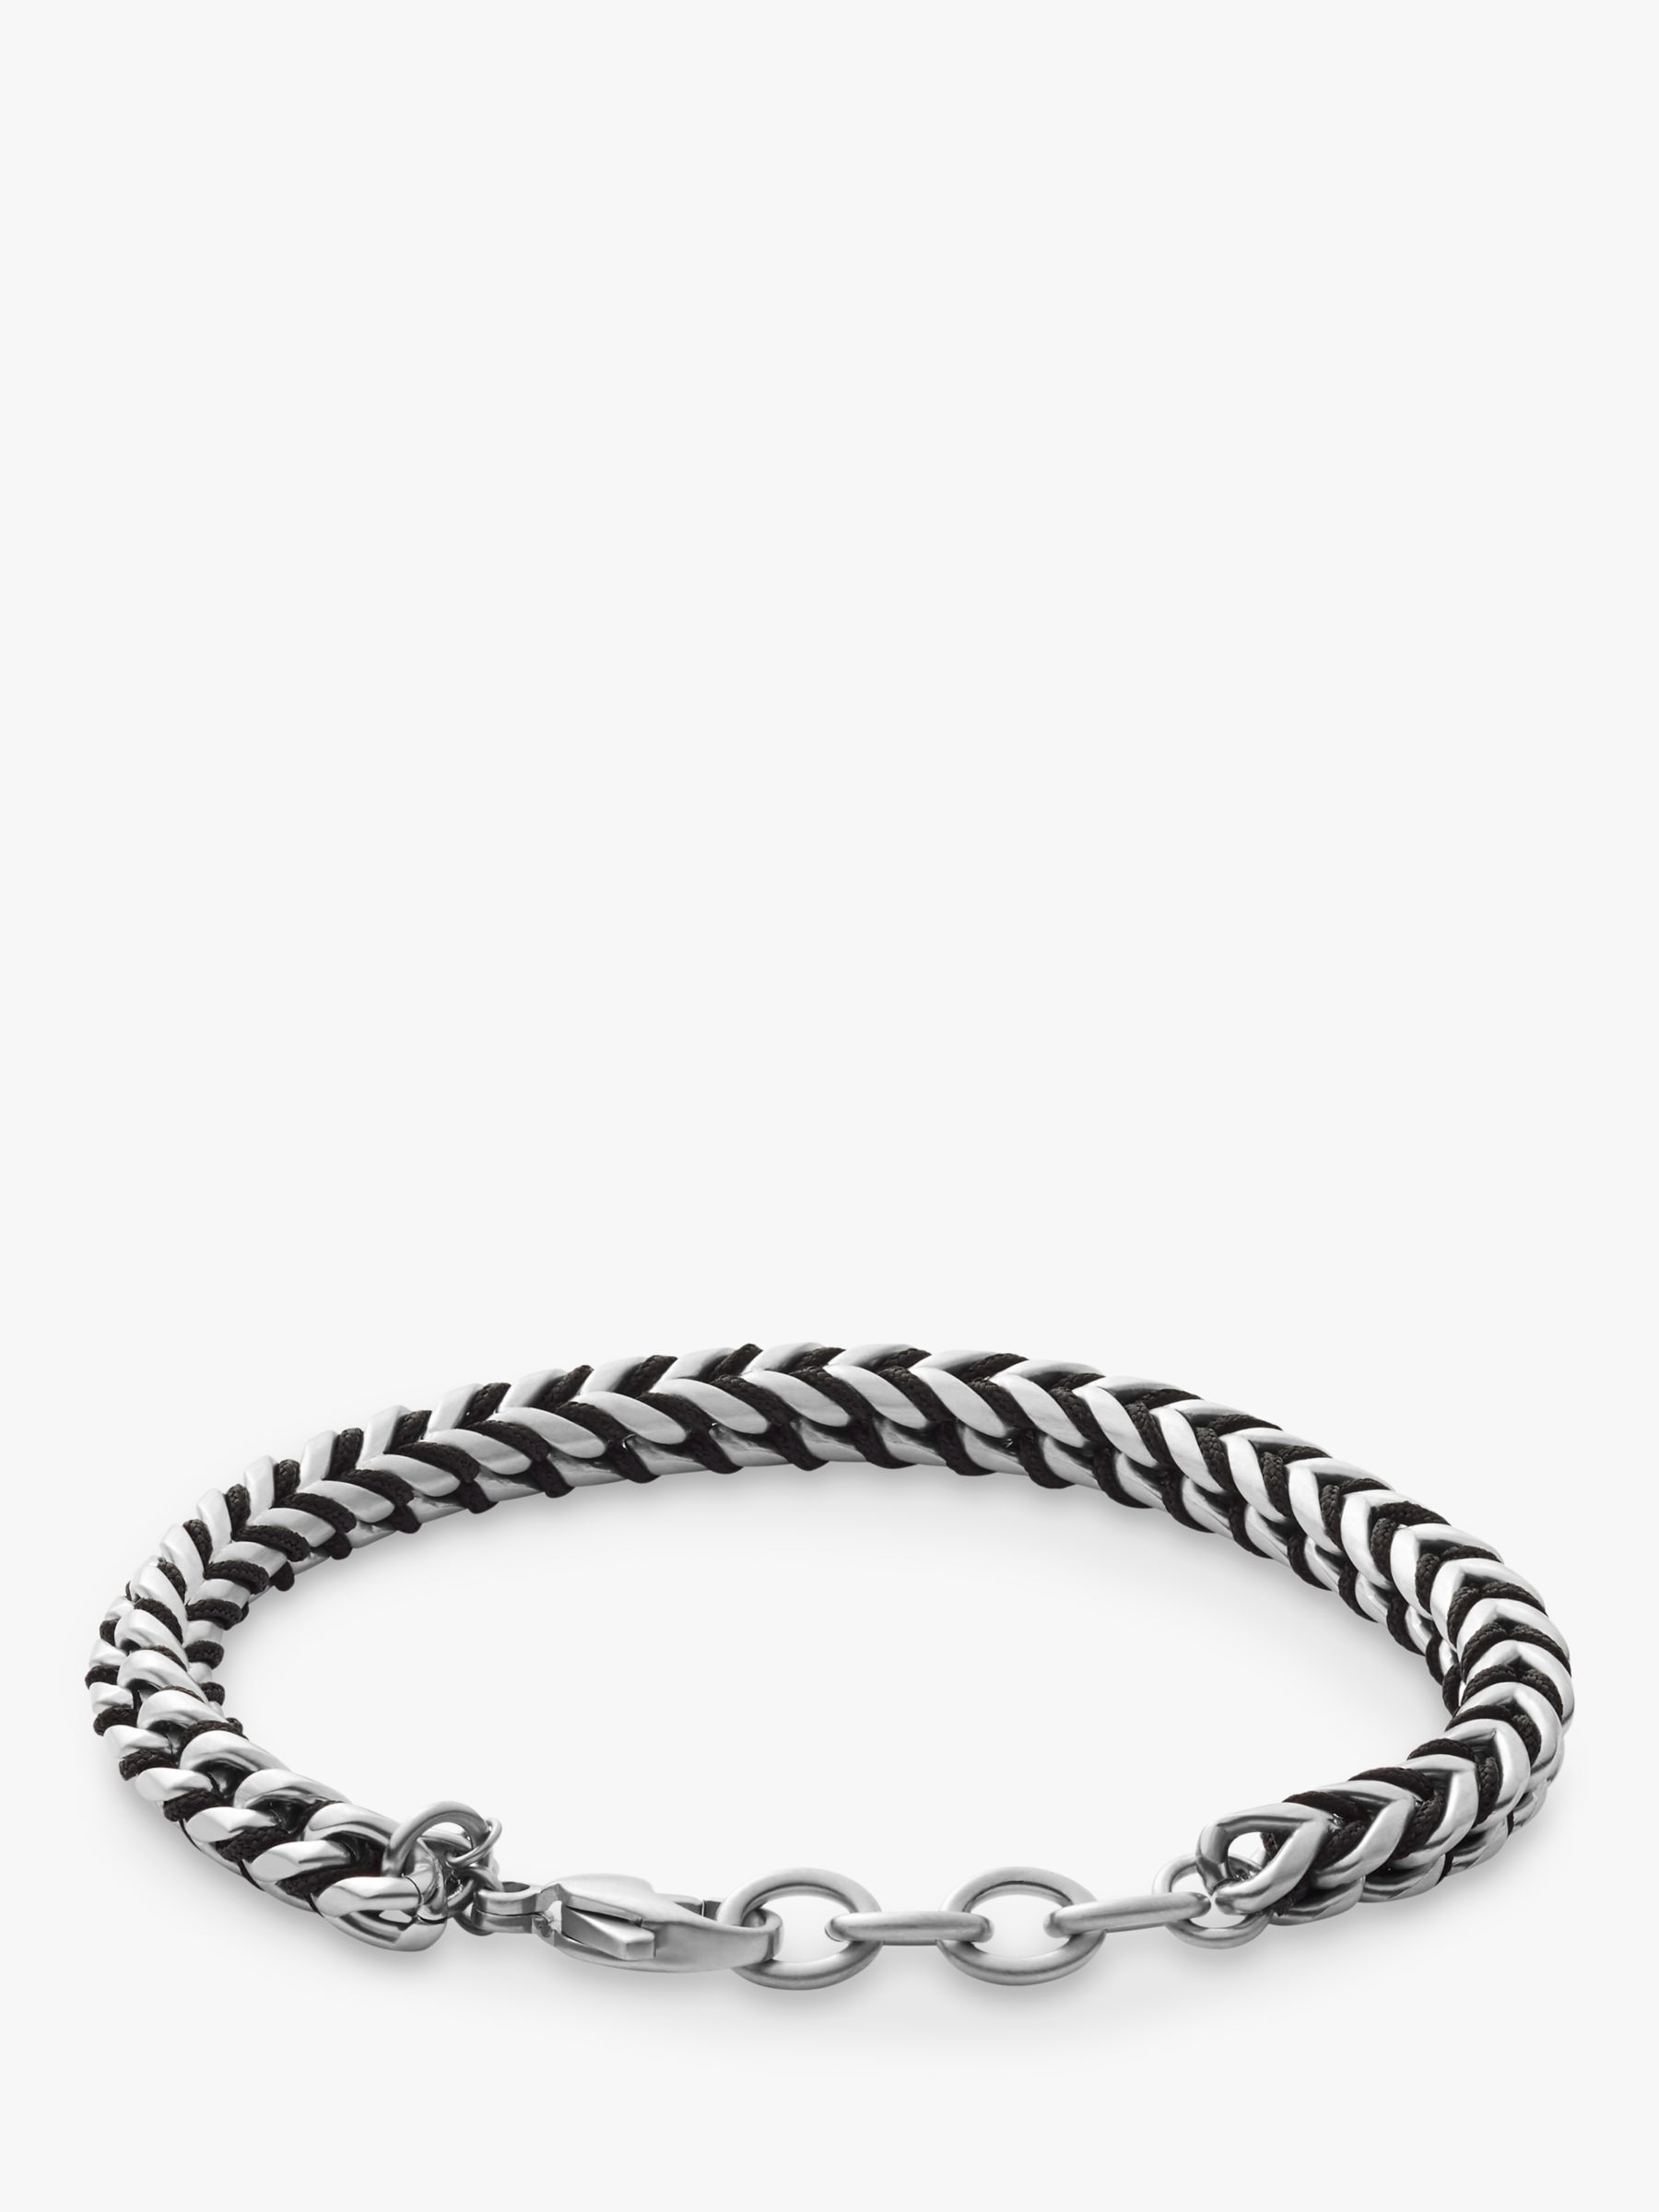 Buy Skagen Men's Chain Bracelet, Silver/Black SKJM0170040 Online at johnlewis.com